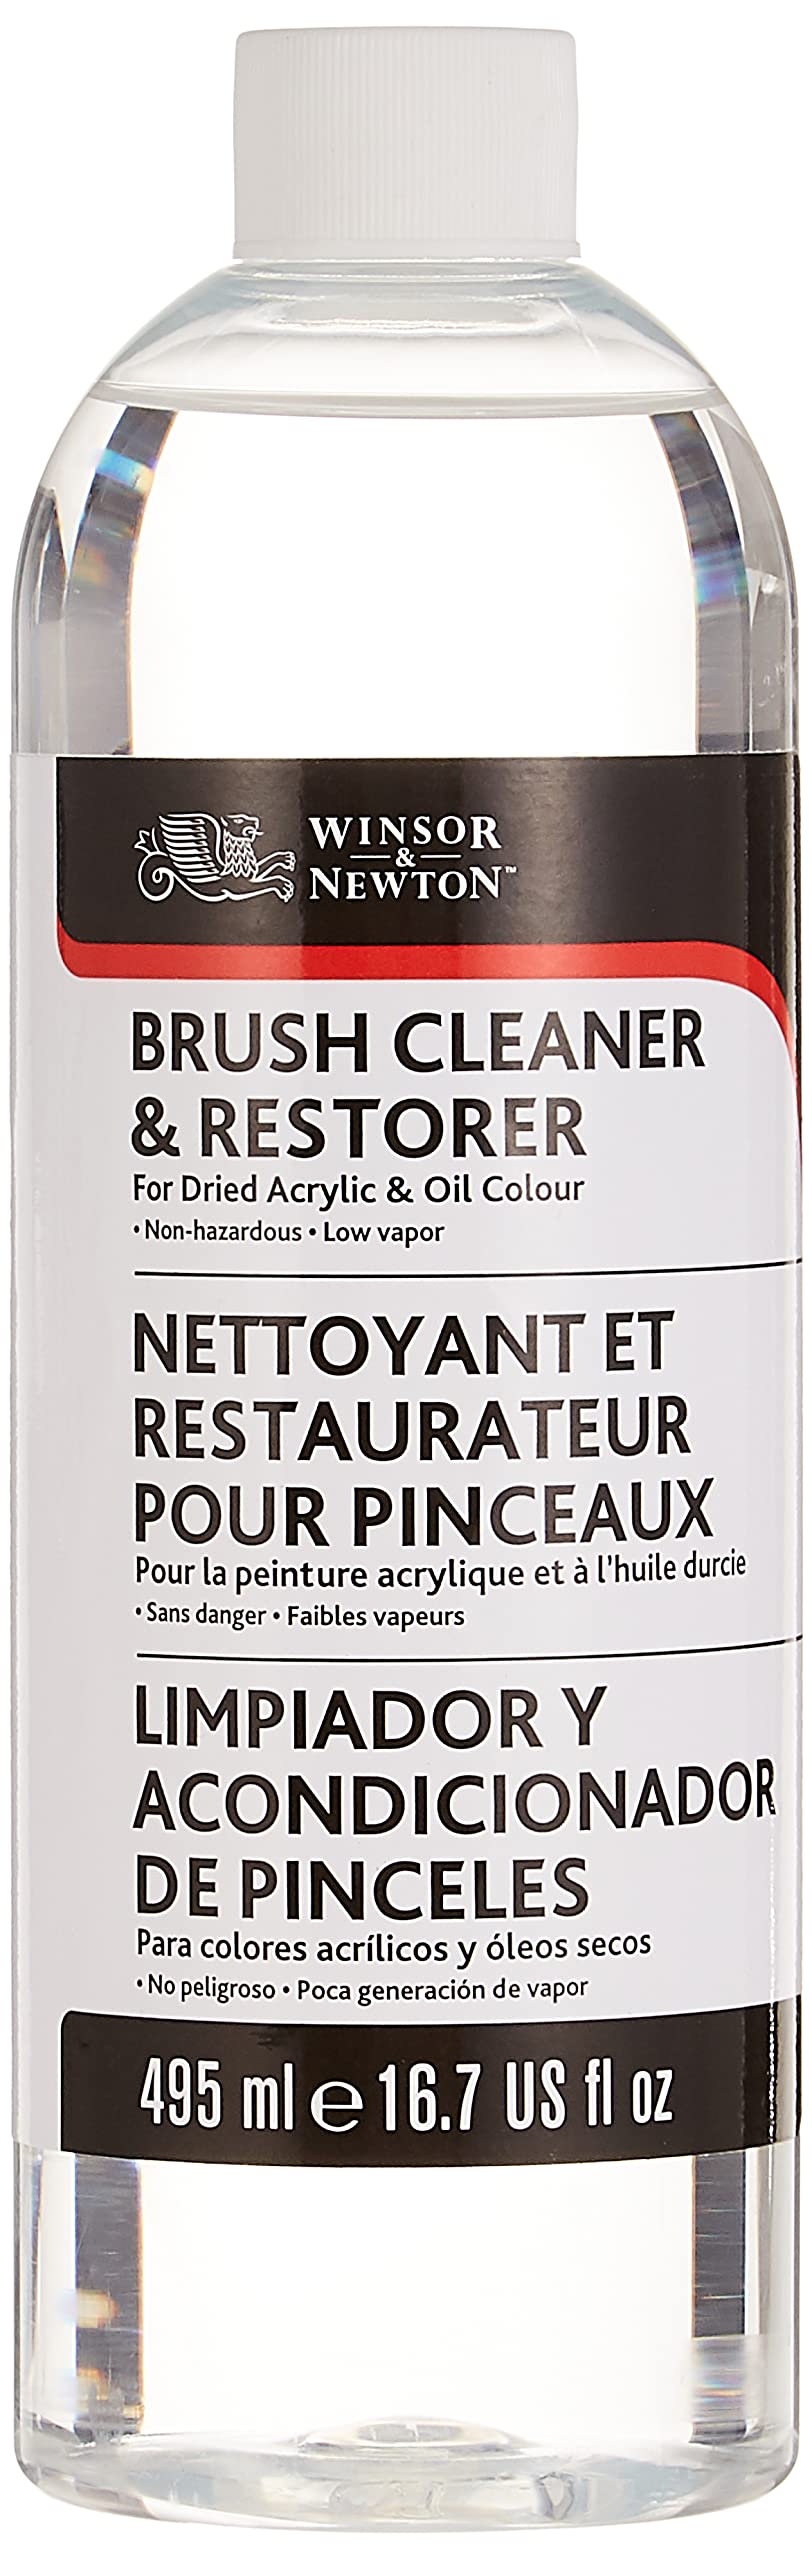 Winsor & Newton Brush Cleaner